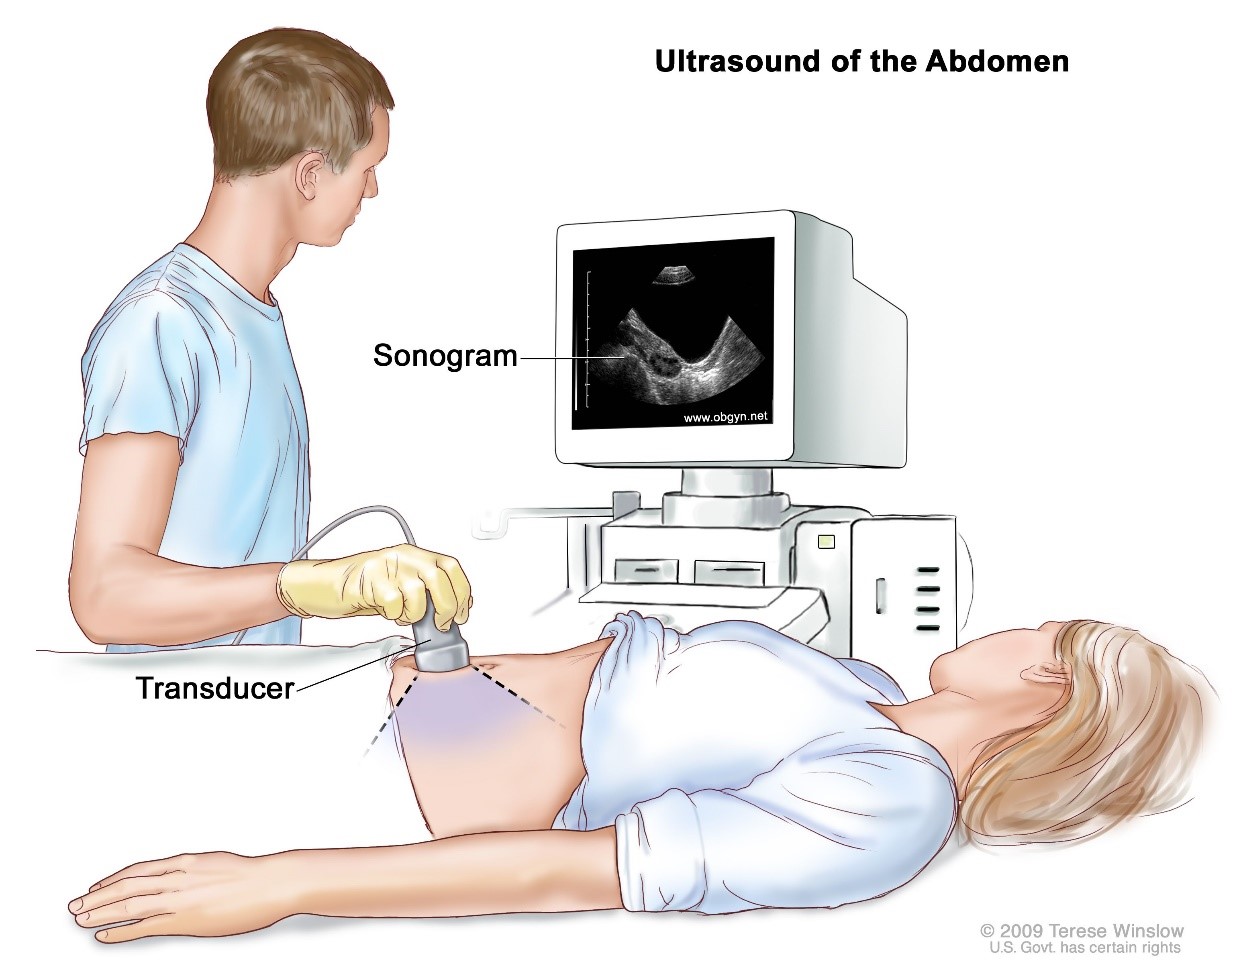 การตรวจอัลตราซาวน์ช่องท้อง (Ultrasound abdomen)